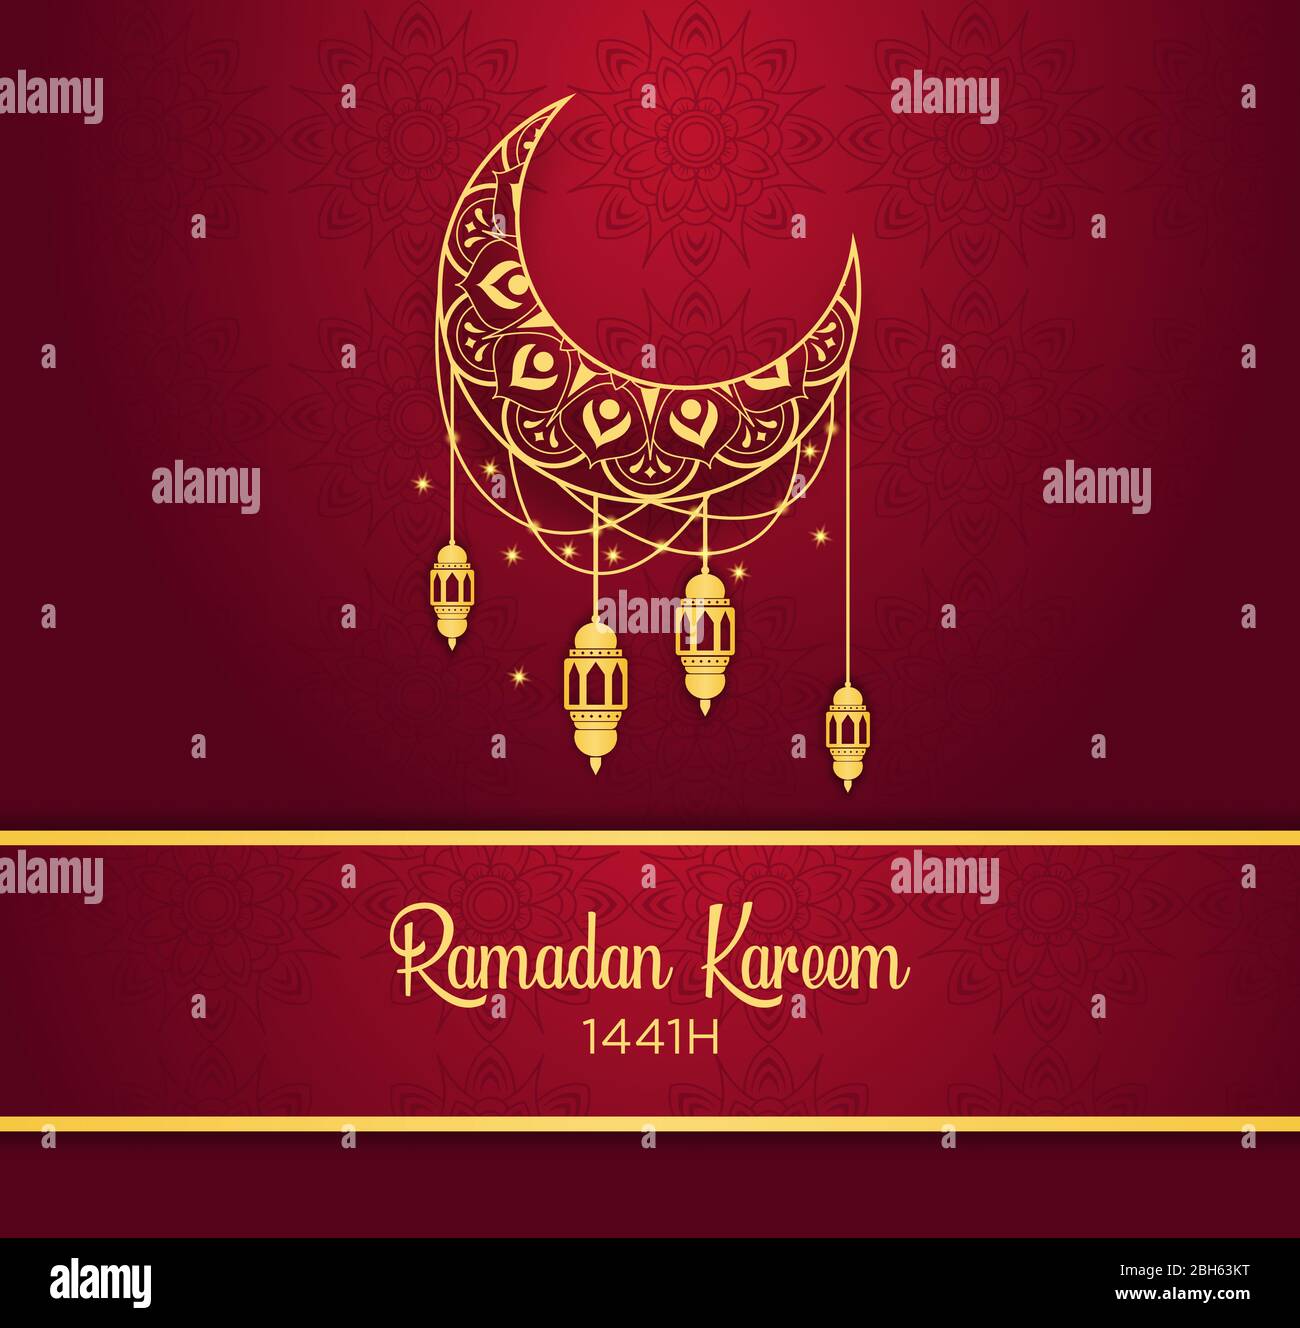 Ramadan Kareem islamisches Design, Halbmond und goldene Laterne auf kastanienem Hintergrund mit Verläufen und Mustern. Stock Vektor